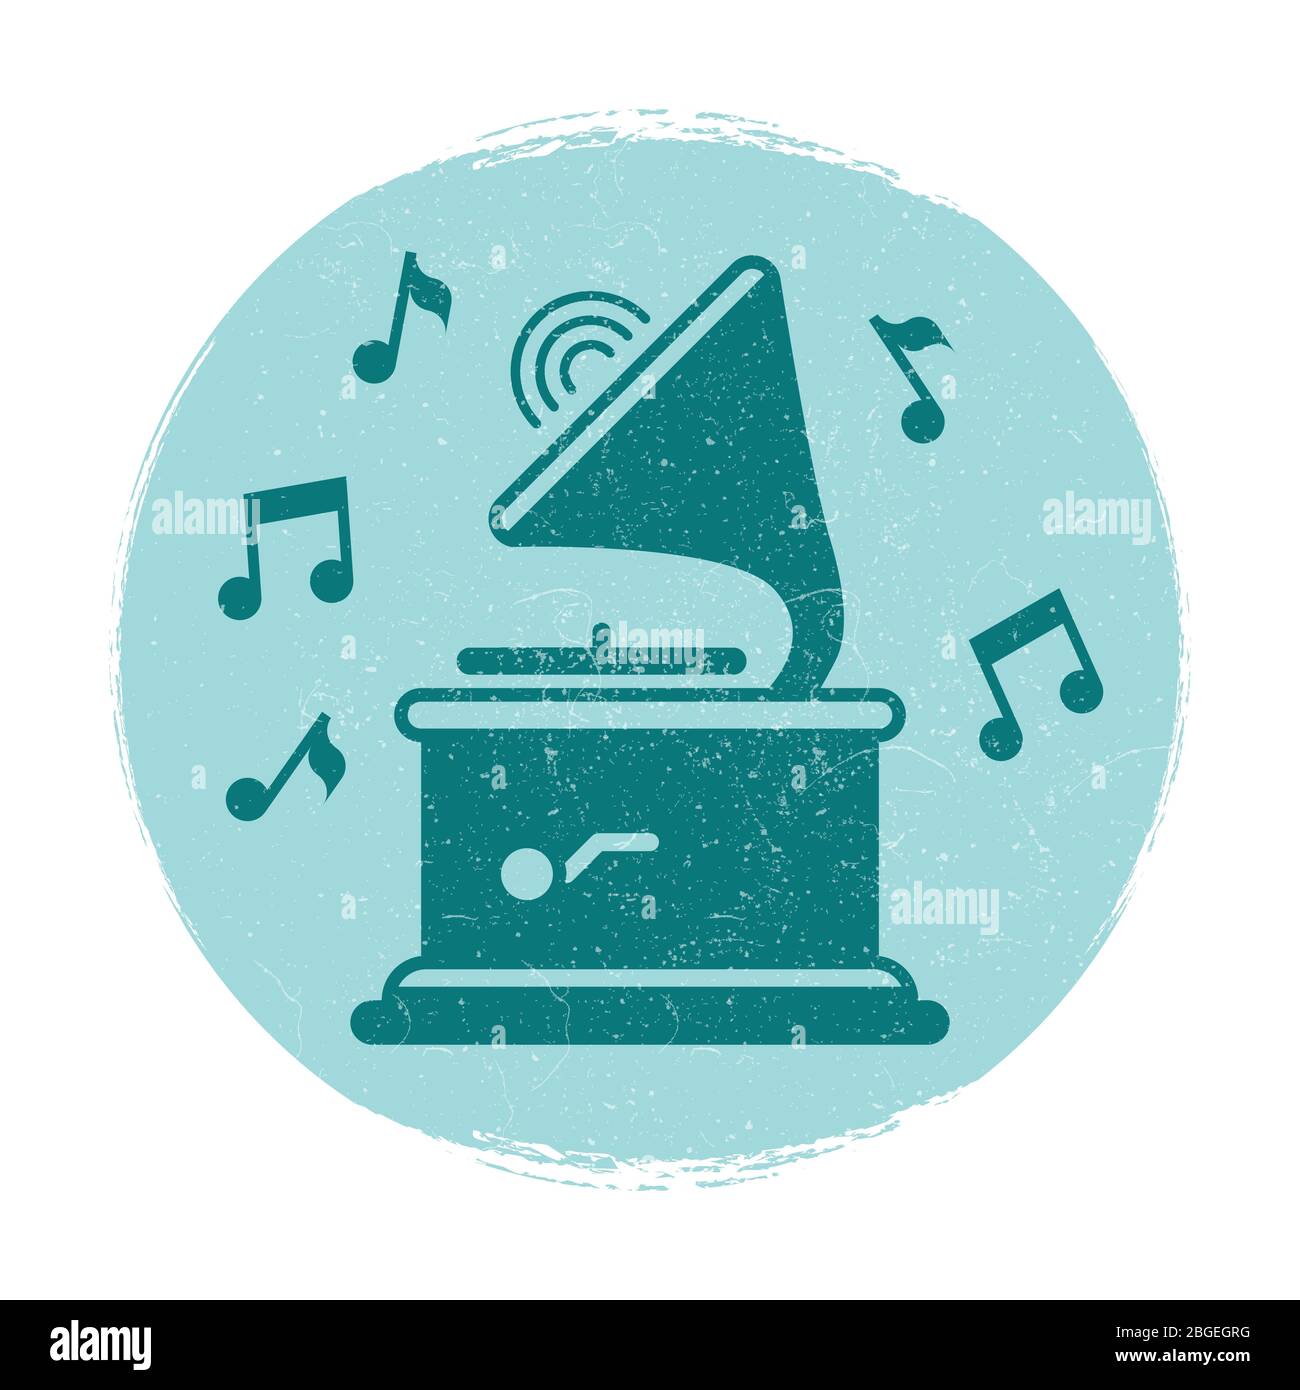 La musique gramophone vintage note l'emblème avec l'effet grunge. Illustration vectorielle Illustration de Vecteur